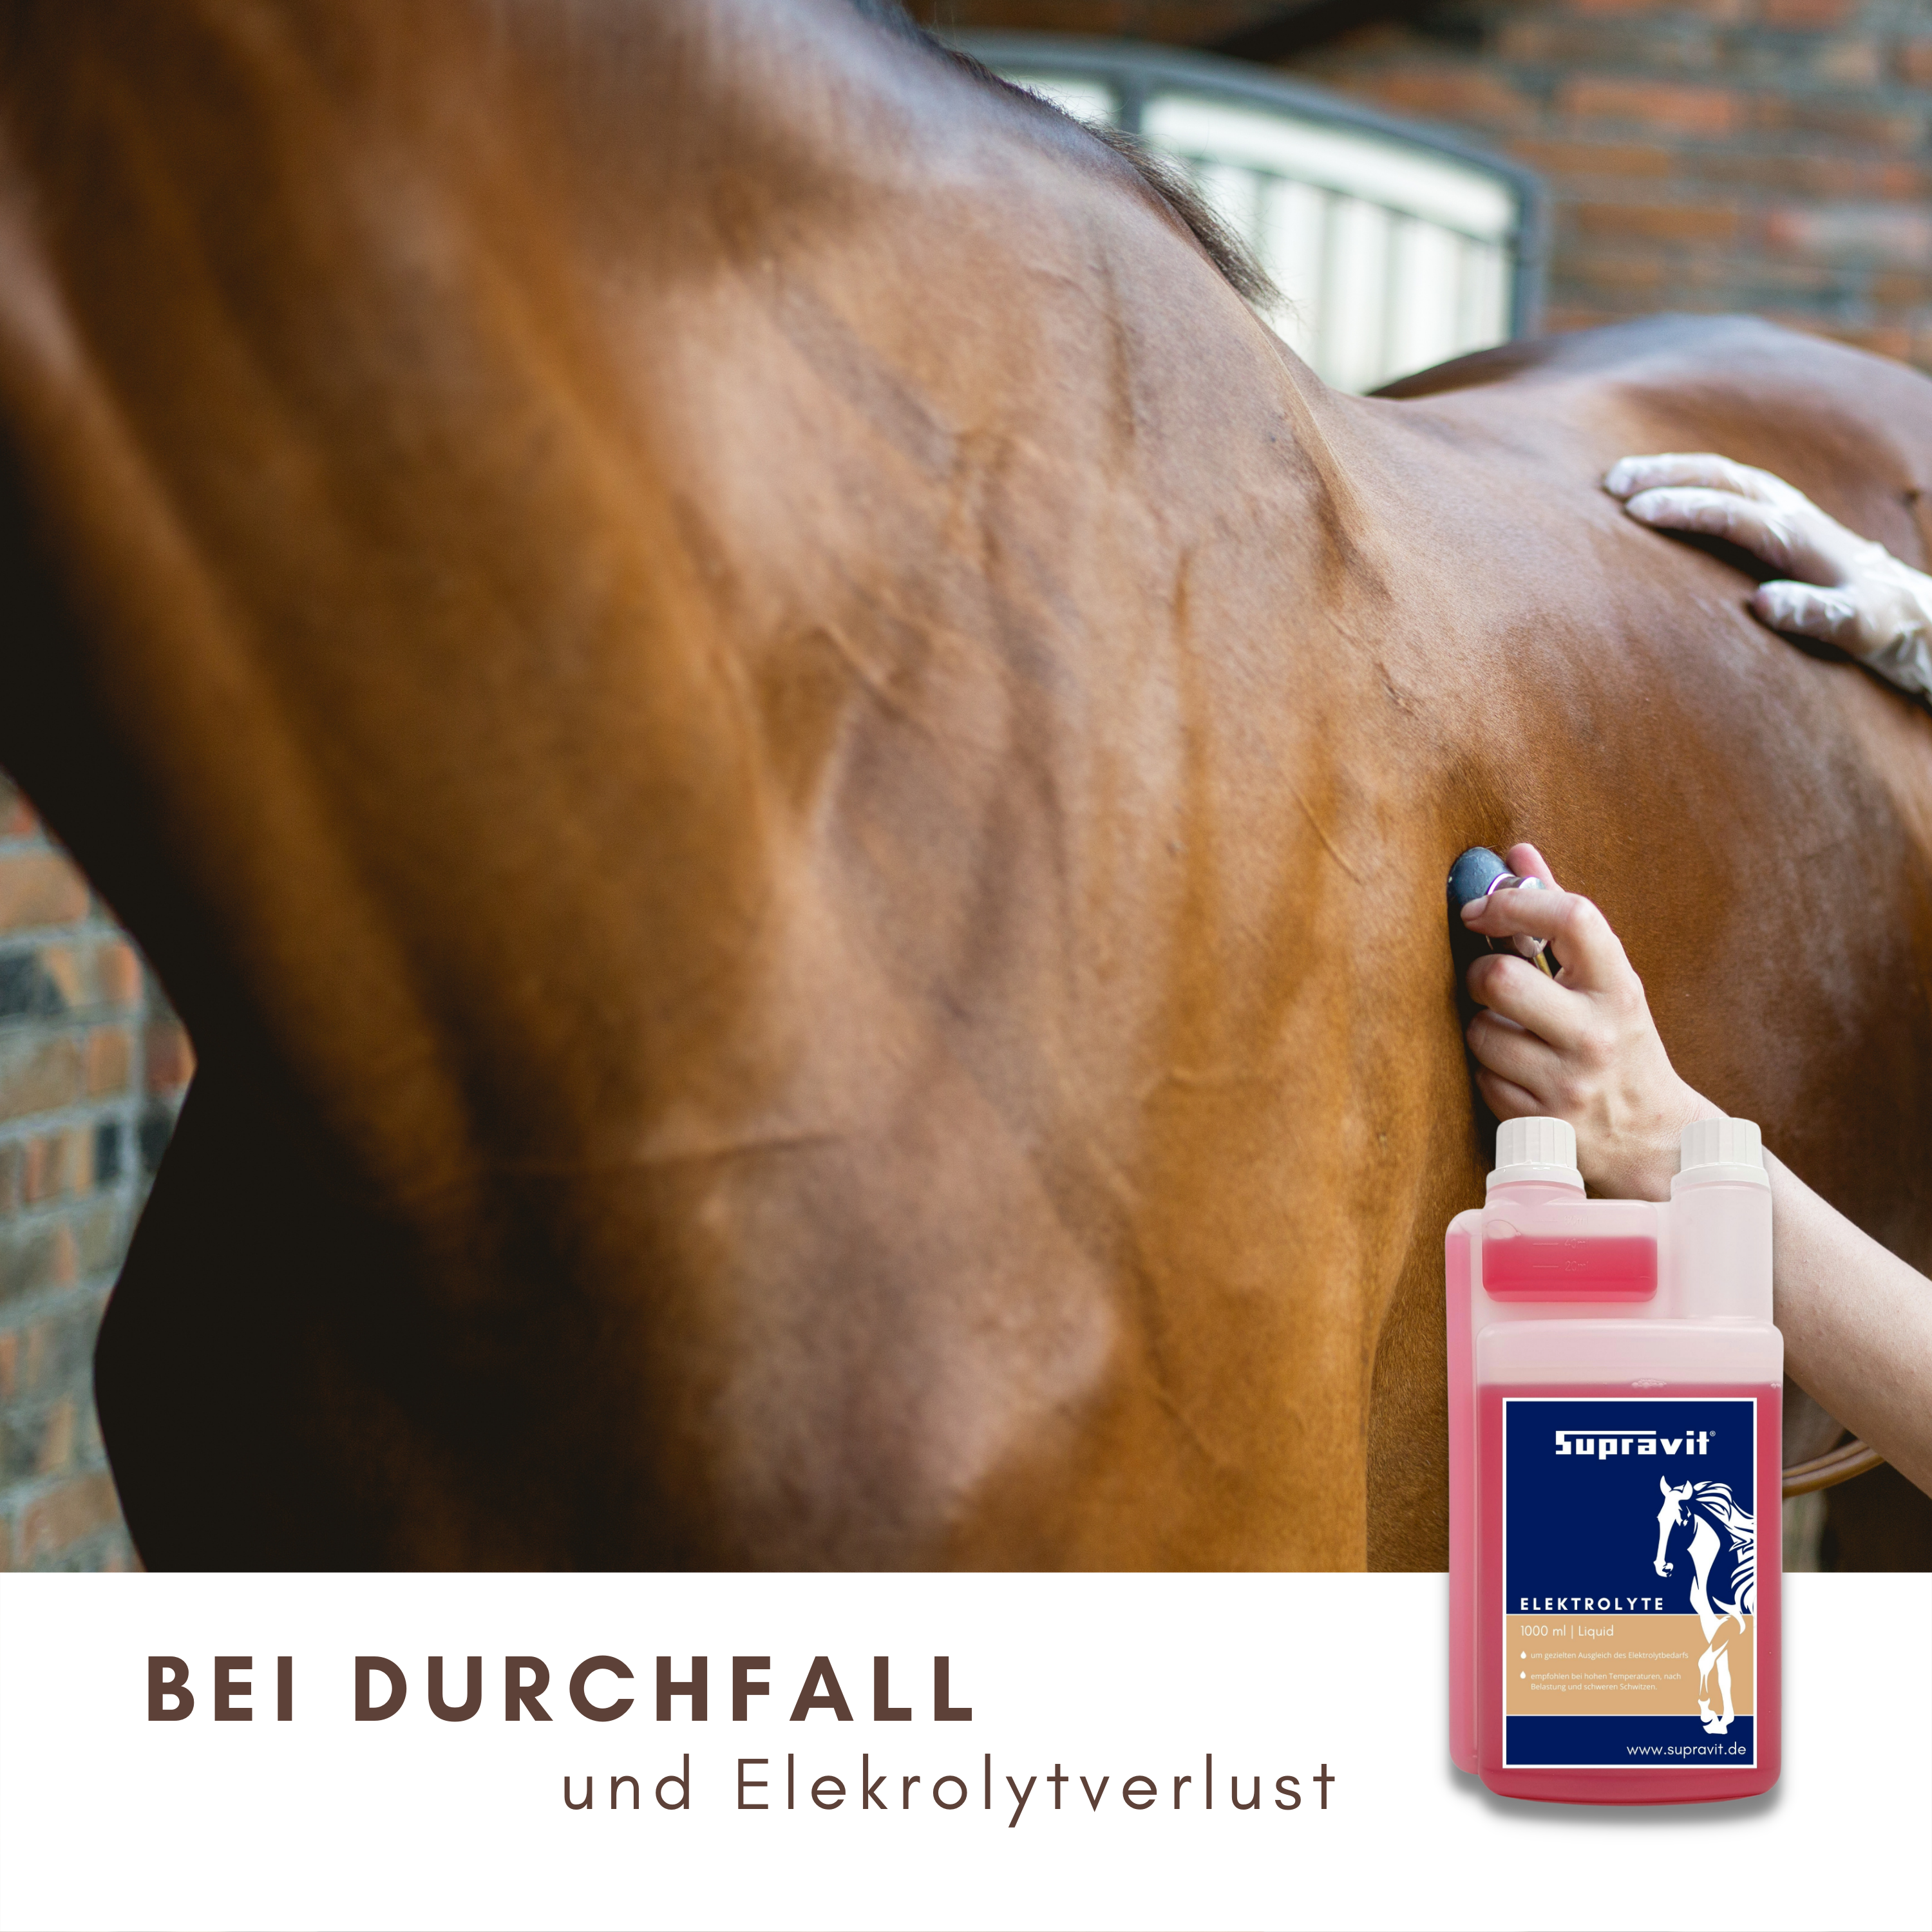 SUPRAVIT Elektrolyte für Pferde I praktische 1000ml Dosierflasche I unterstützt den Ausgleich bei intensivem Schwitzen, Durchfall und Elektrolytmangel 